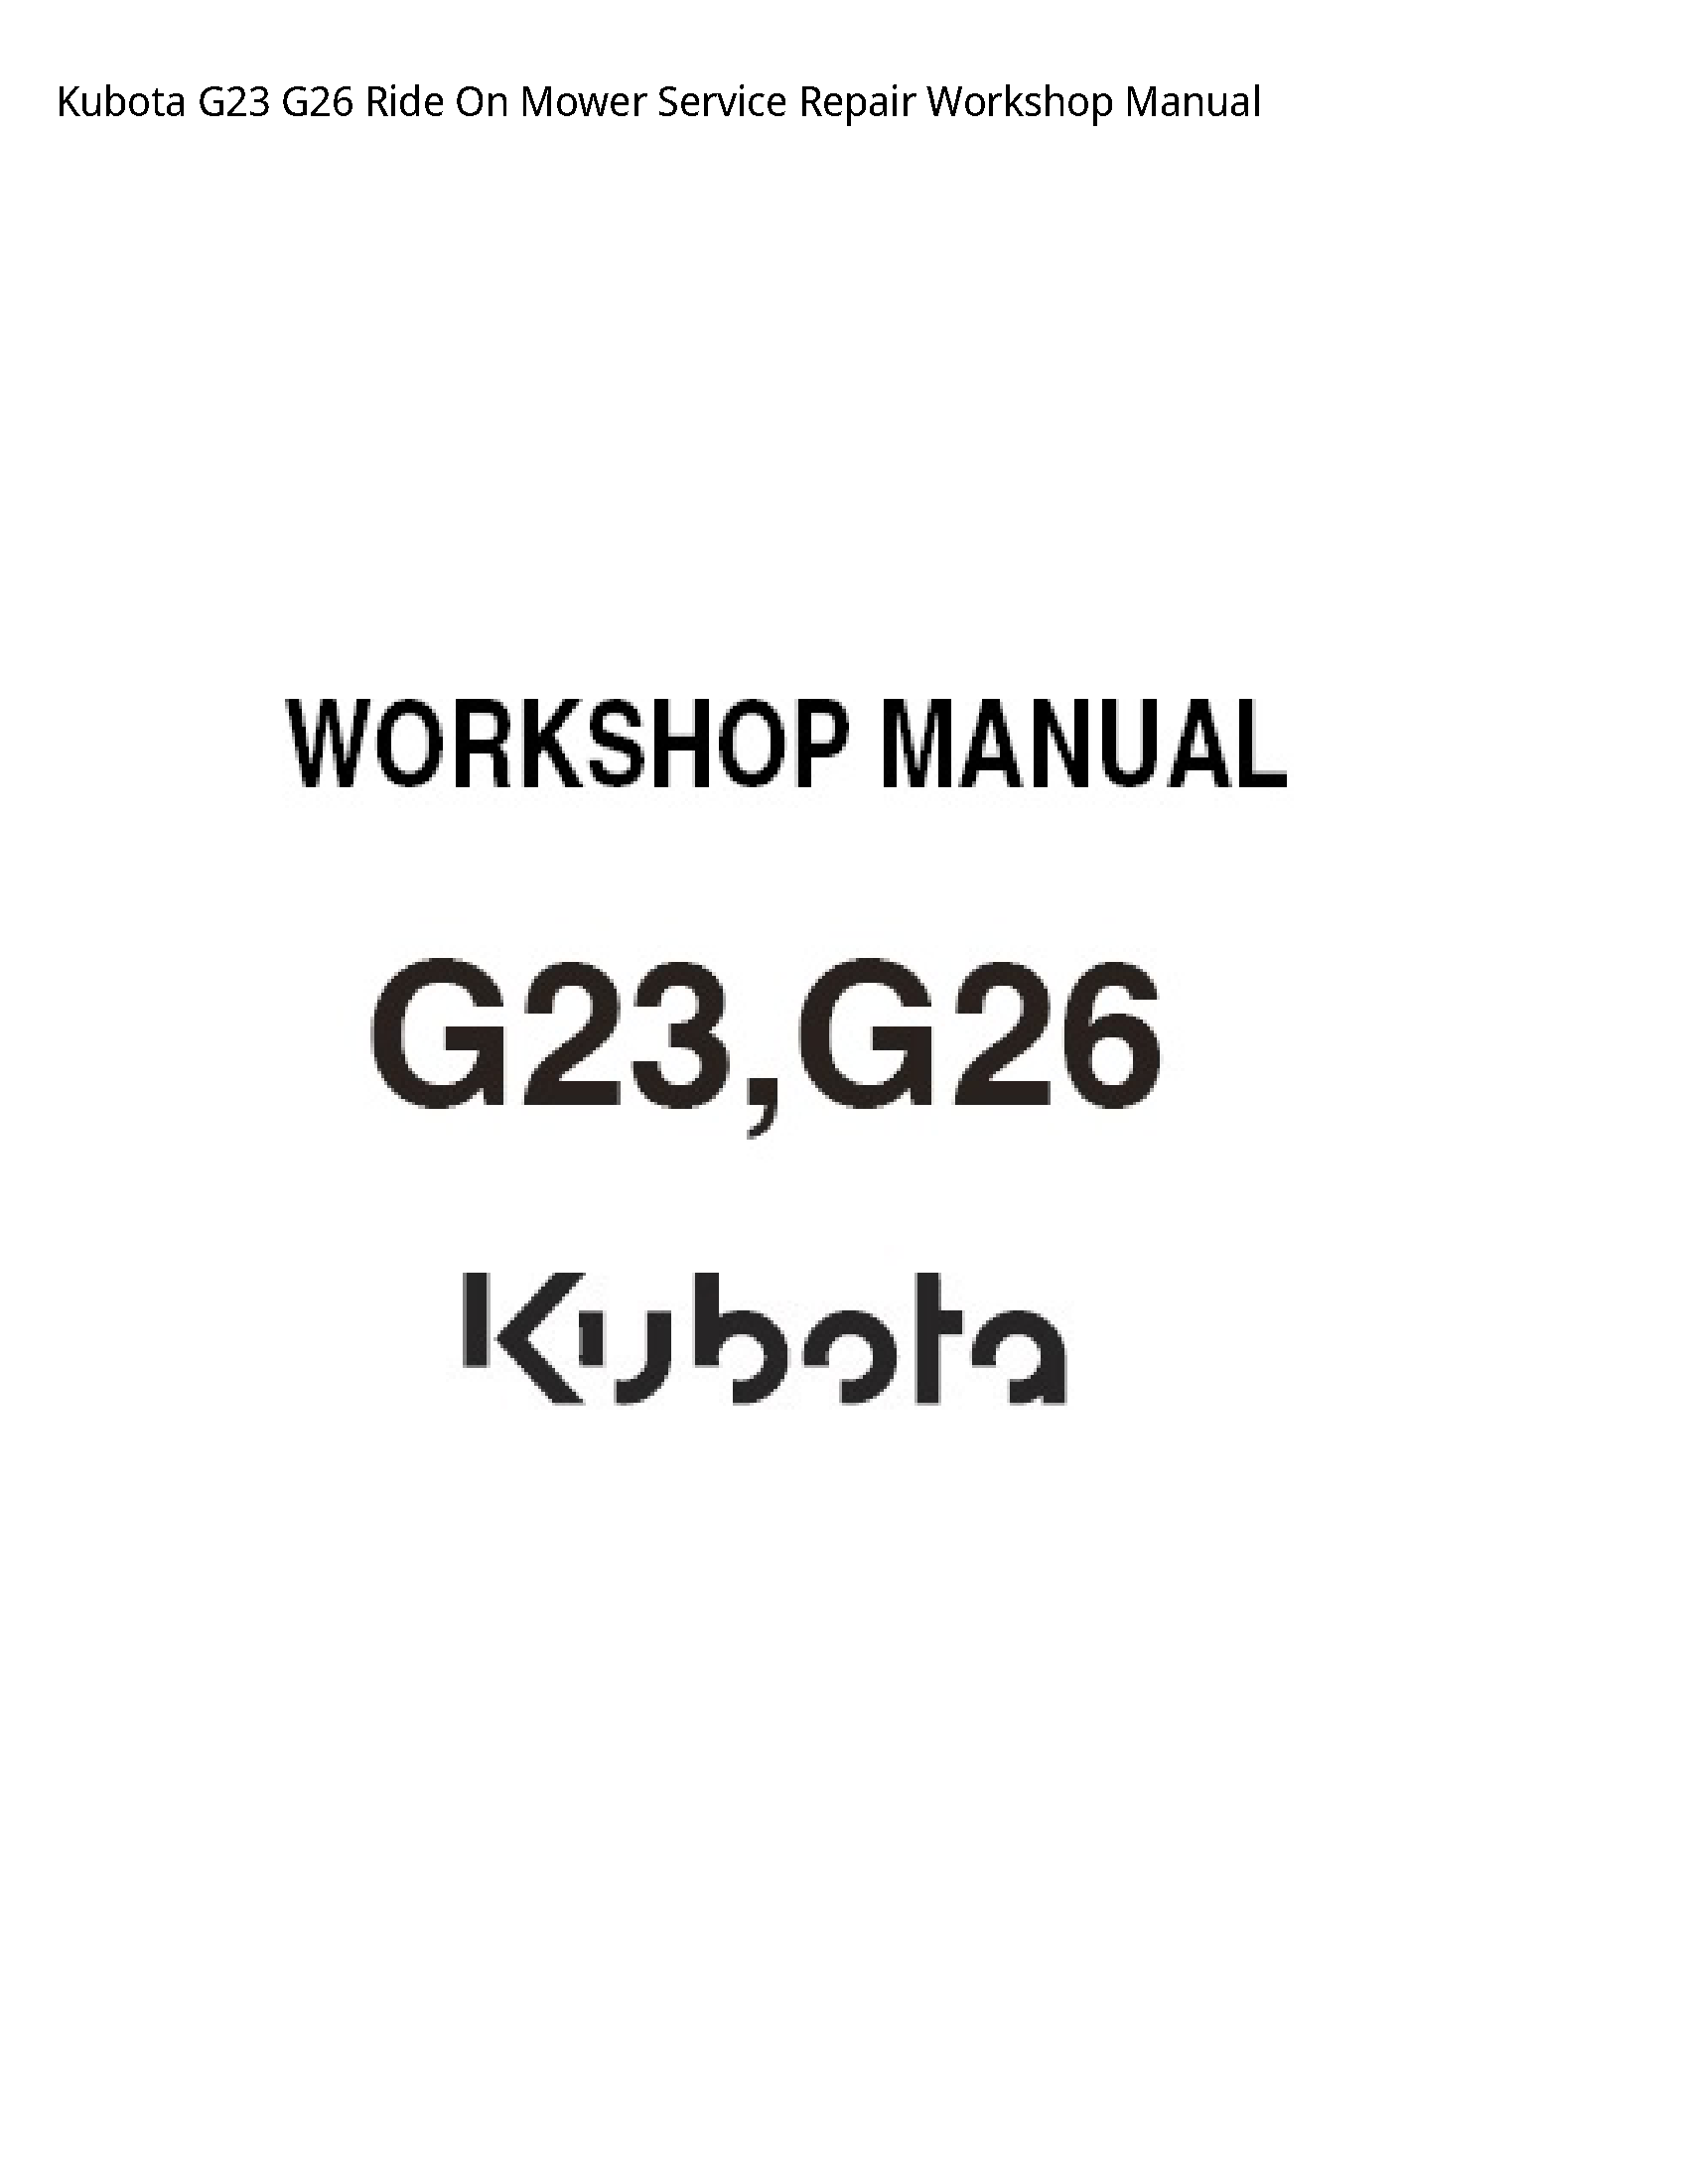 Kubota G23 Ride On Mower manual